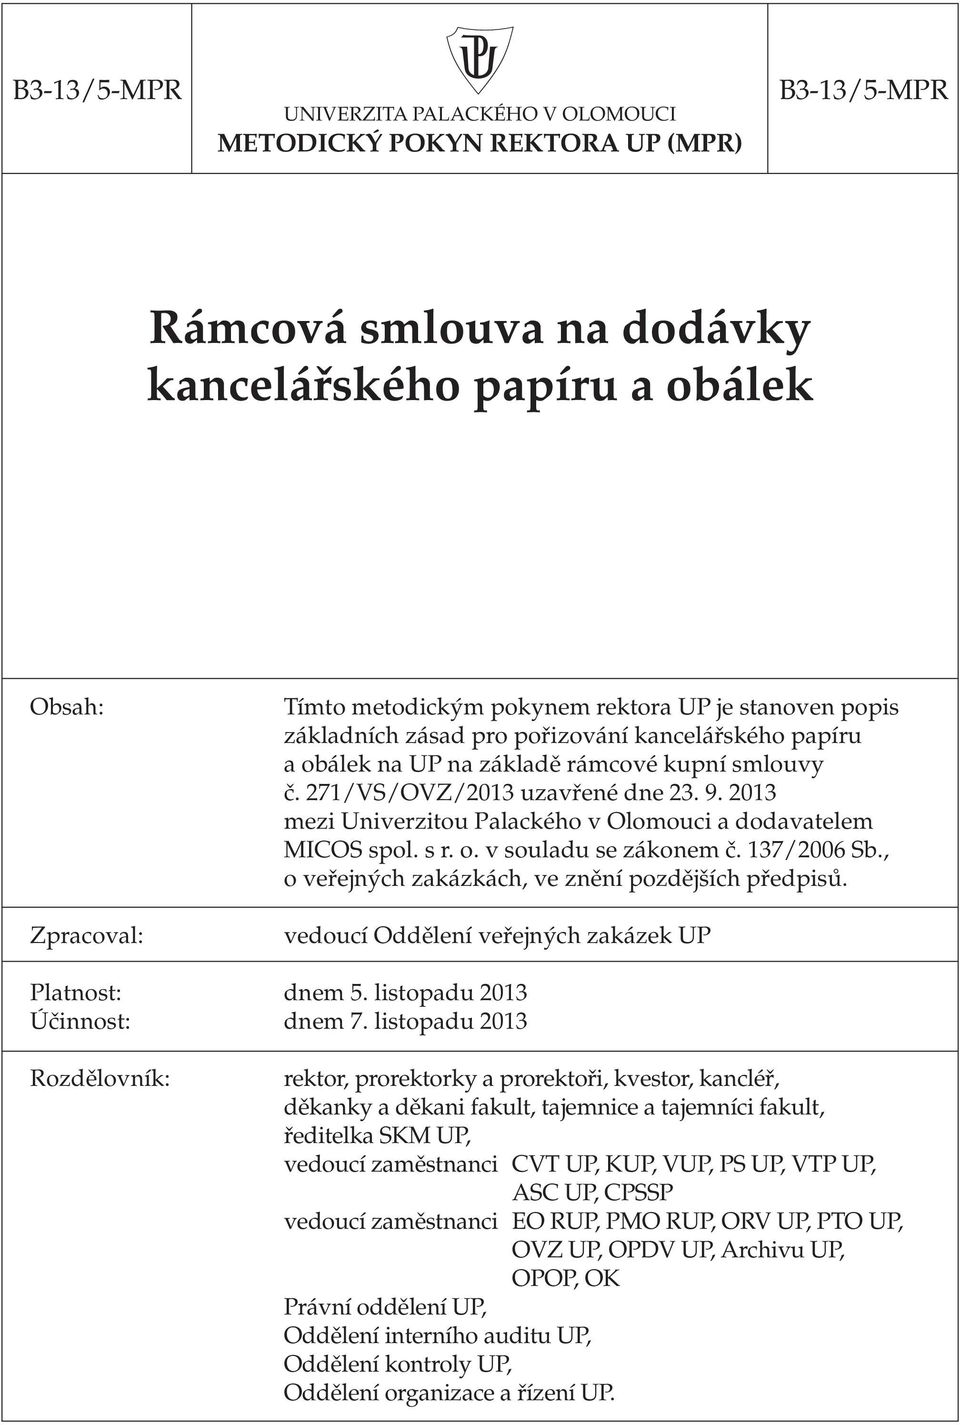 2013 mezi Univerzitou Palackého v Olomouci a dodavatelem MICOS spol. s r. o. v souladu se zákonem č. 137/2006 Sb., o veřejných zakázkách, ve znění pozdějších předpisů.